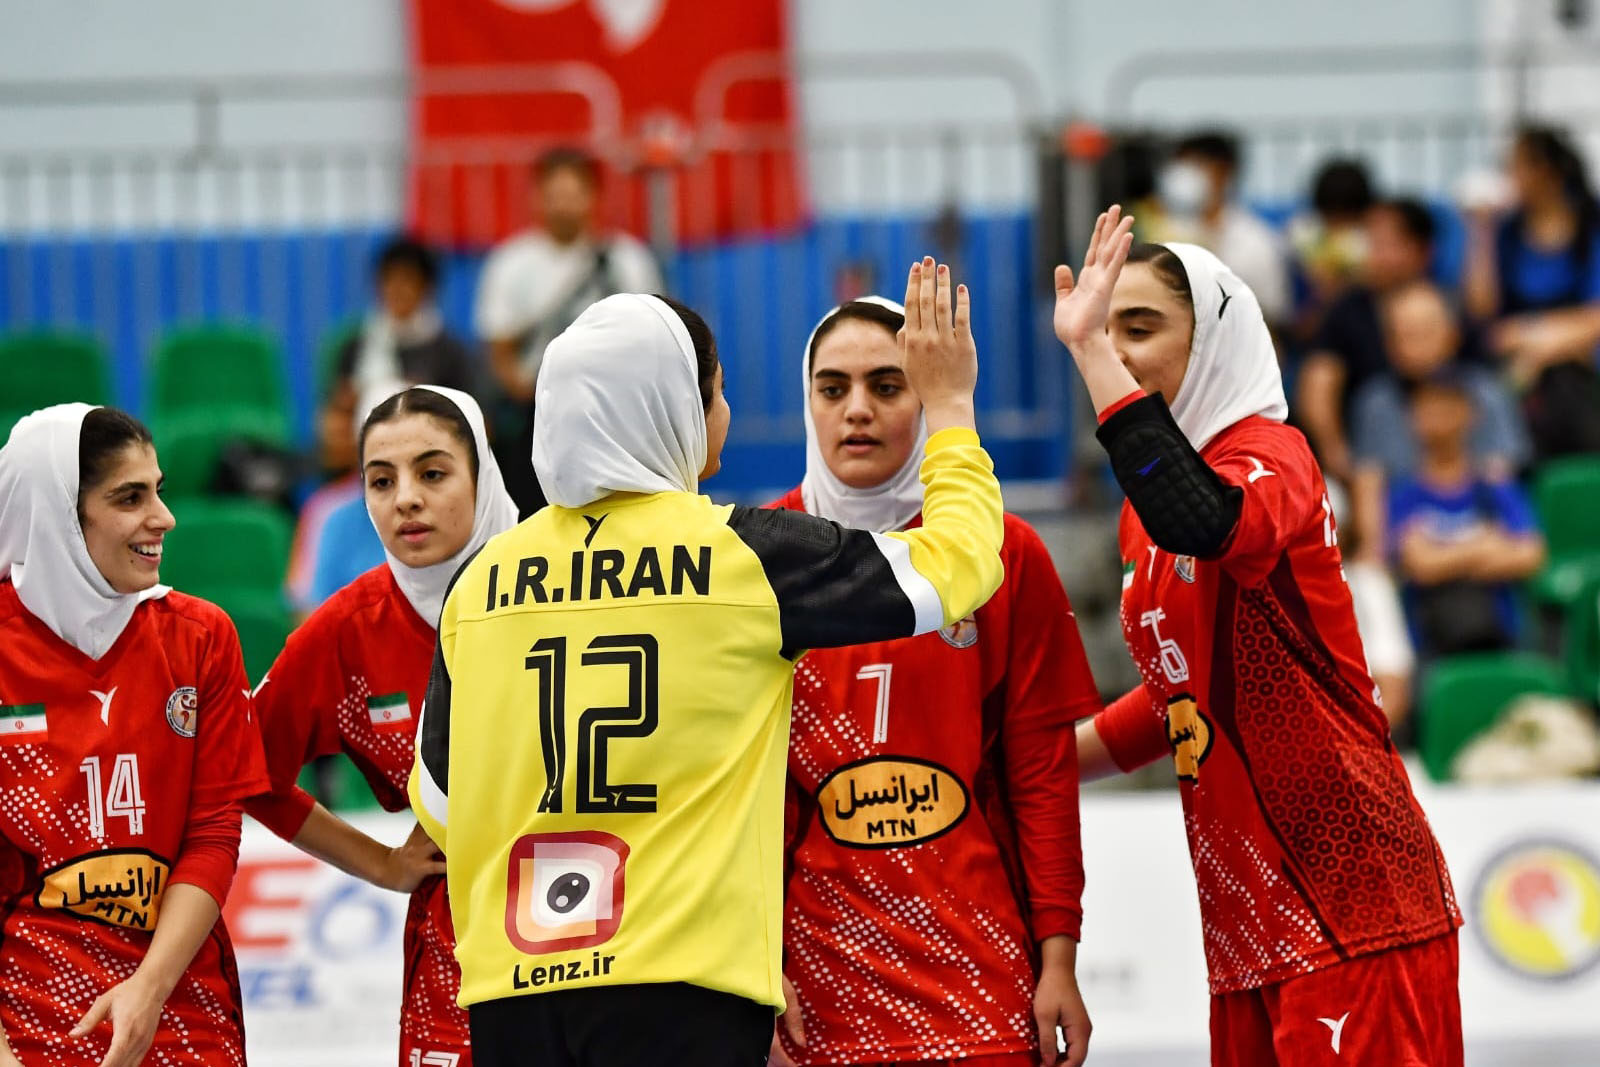 فردا، آخرین دیدار دختران جوان ایران مقابل قزاقستان در قهرمانی جوانان آسیا